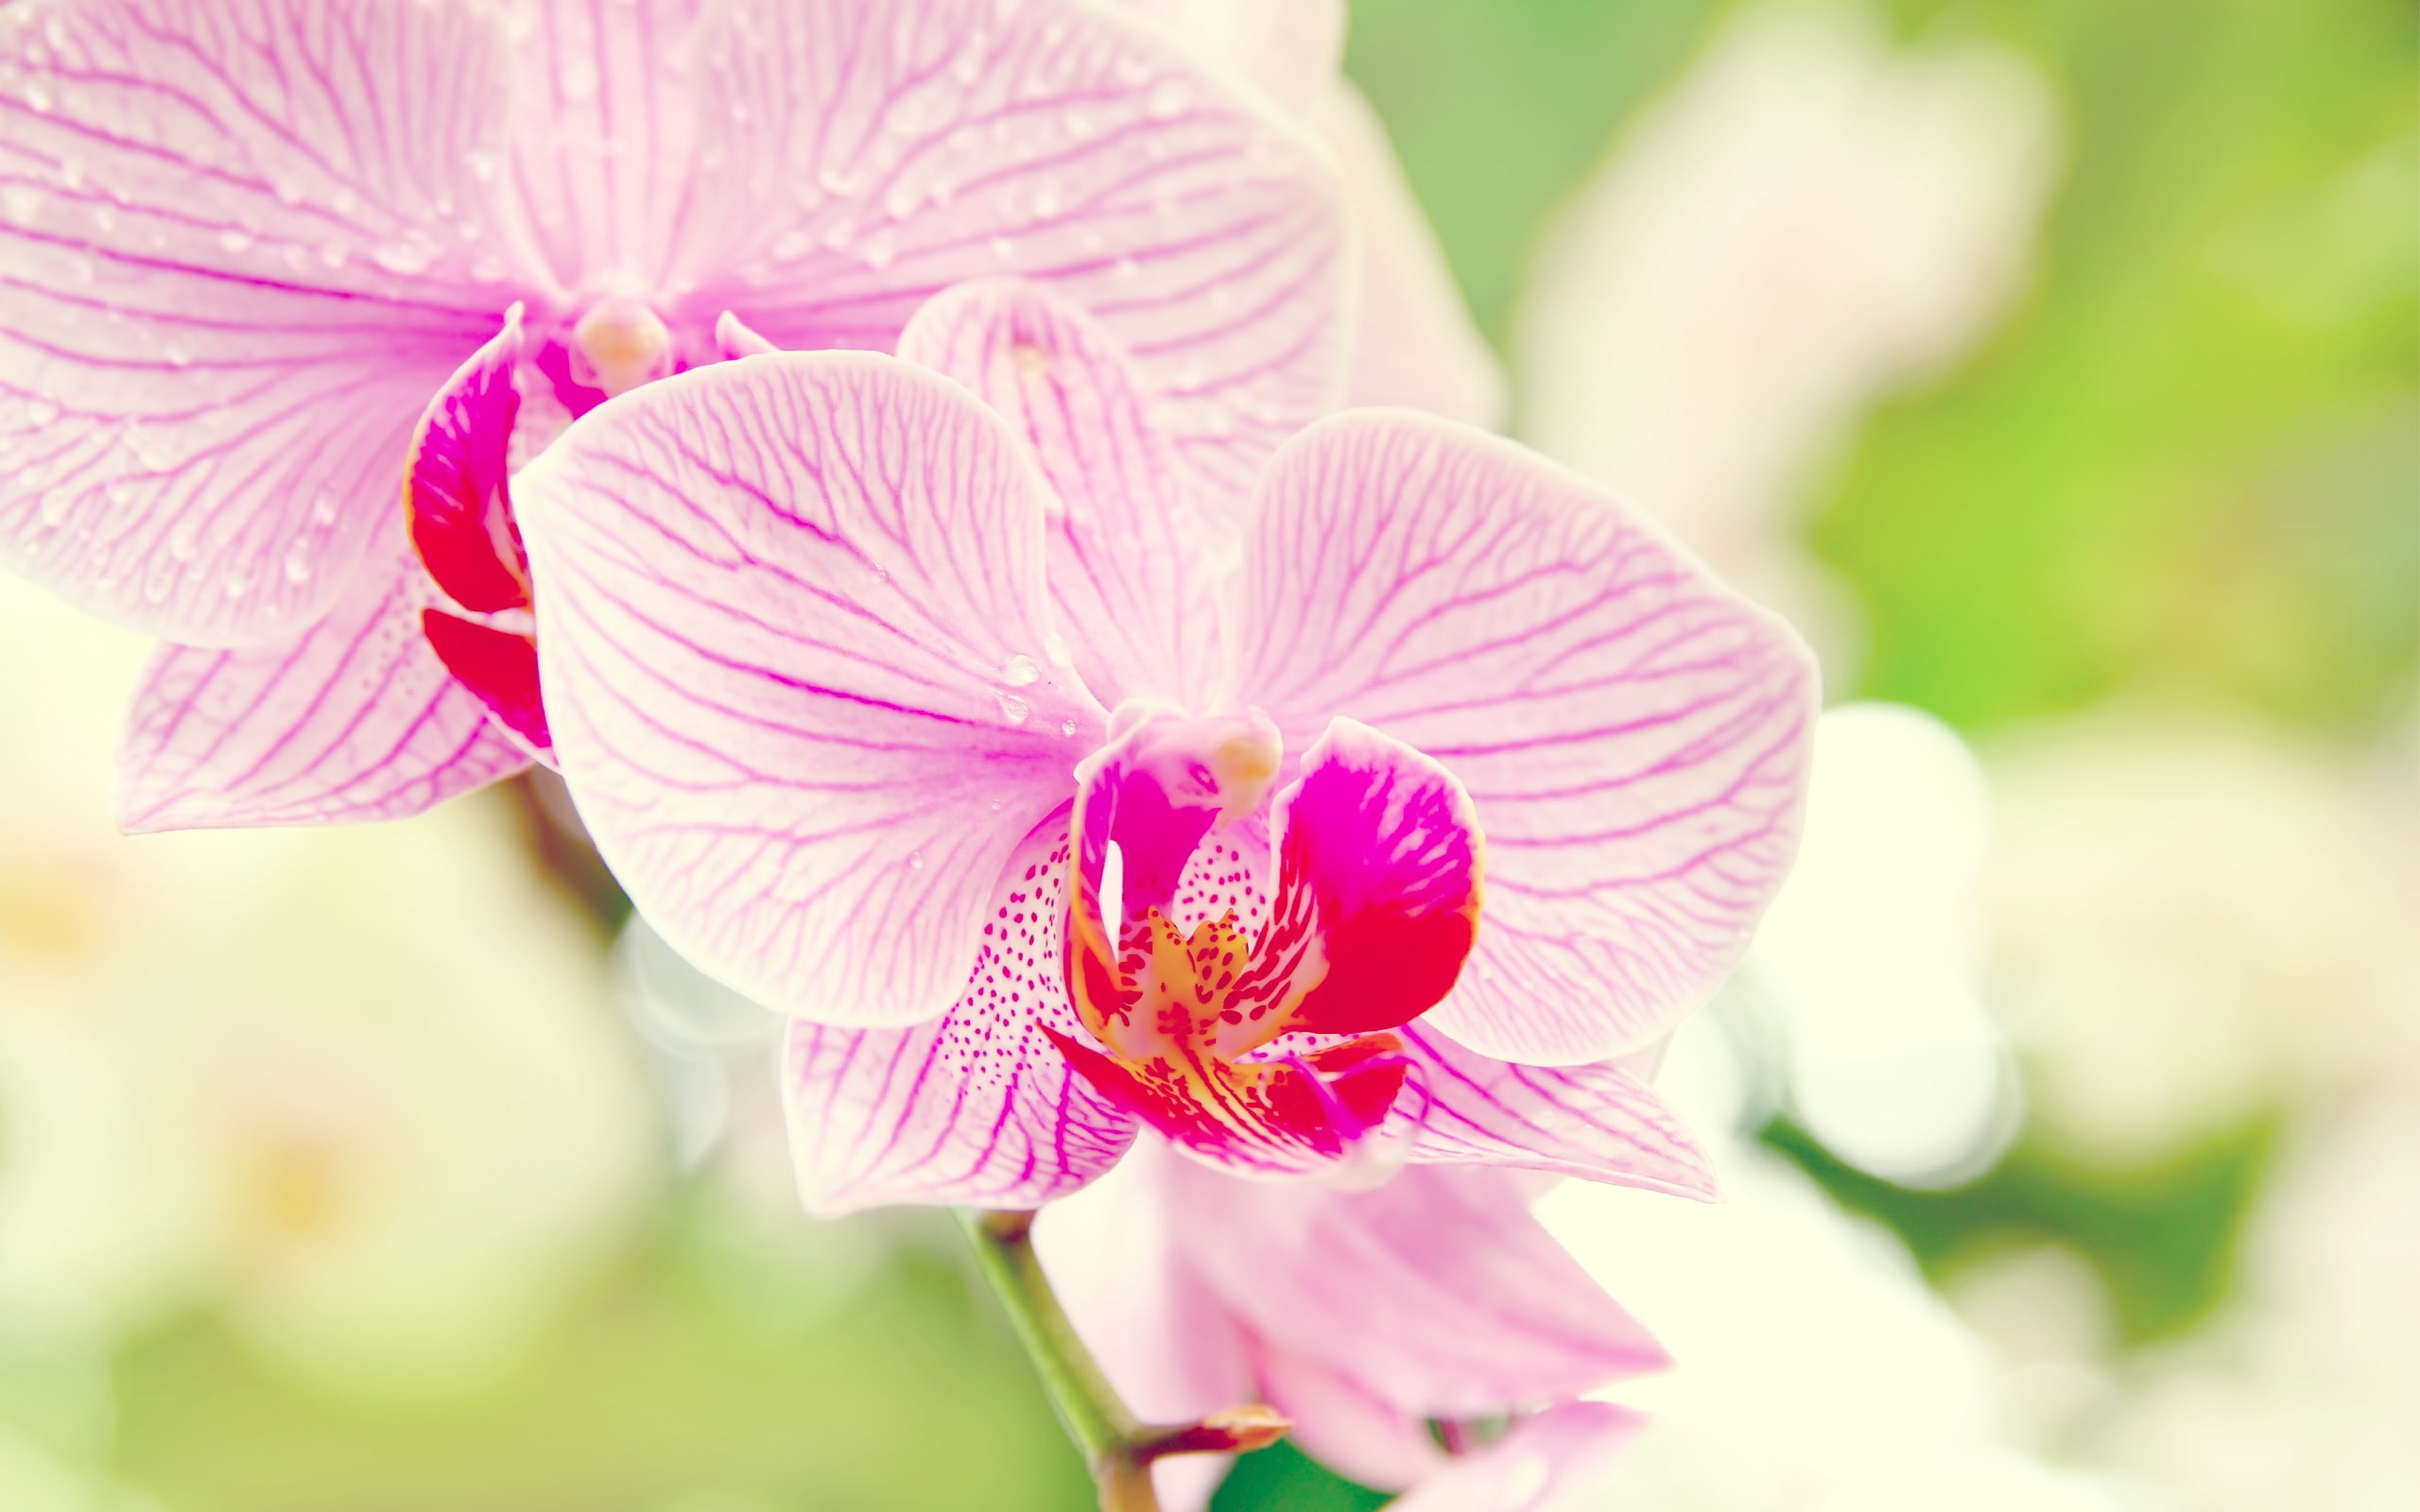 Phalaenopsis orchid flower macro